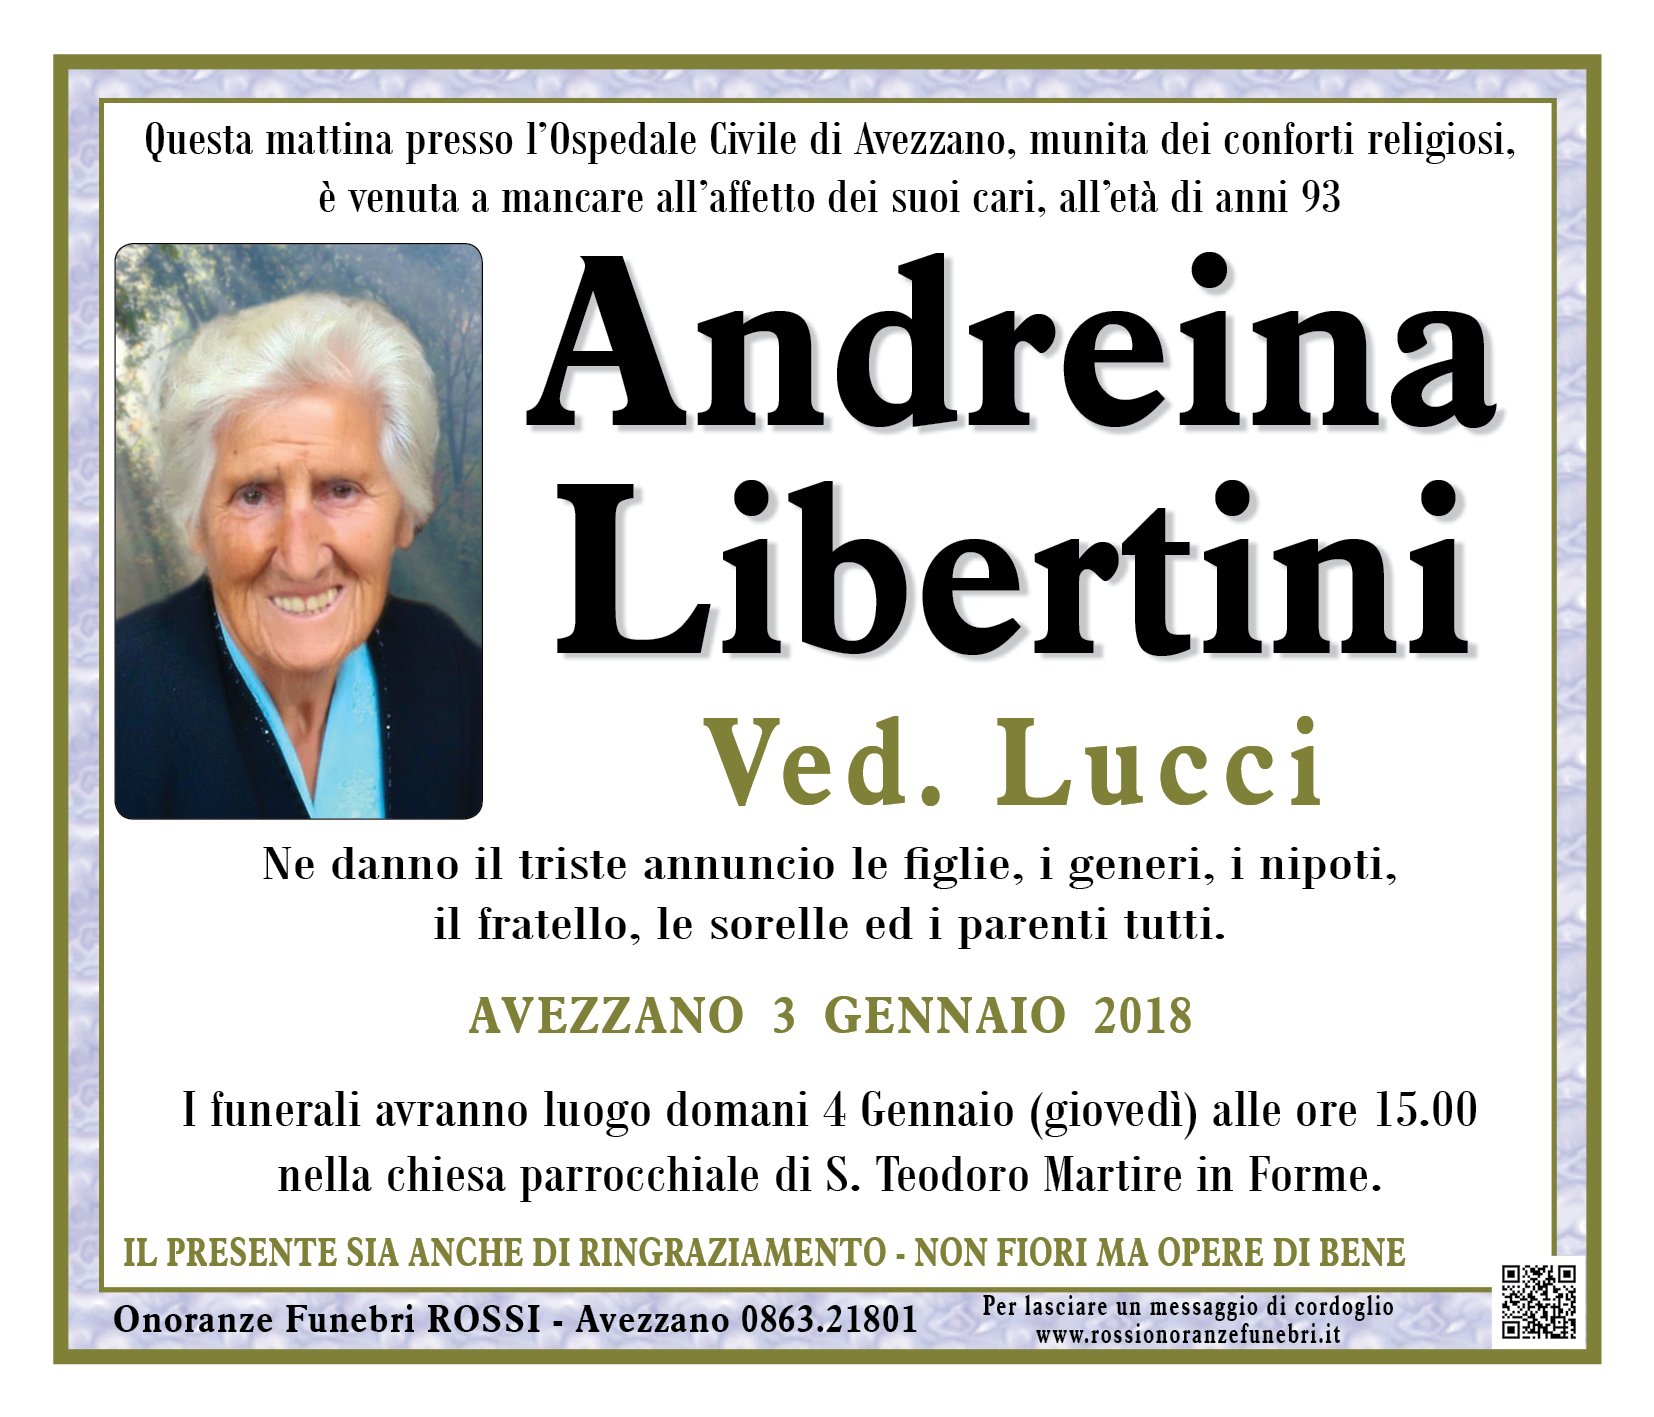 Andreina Libertini